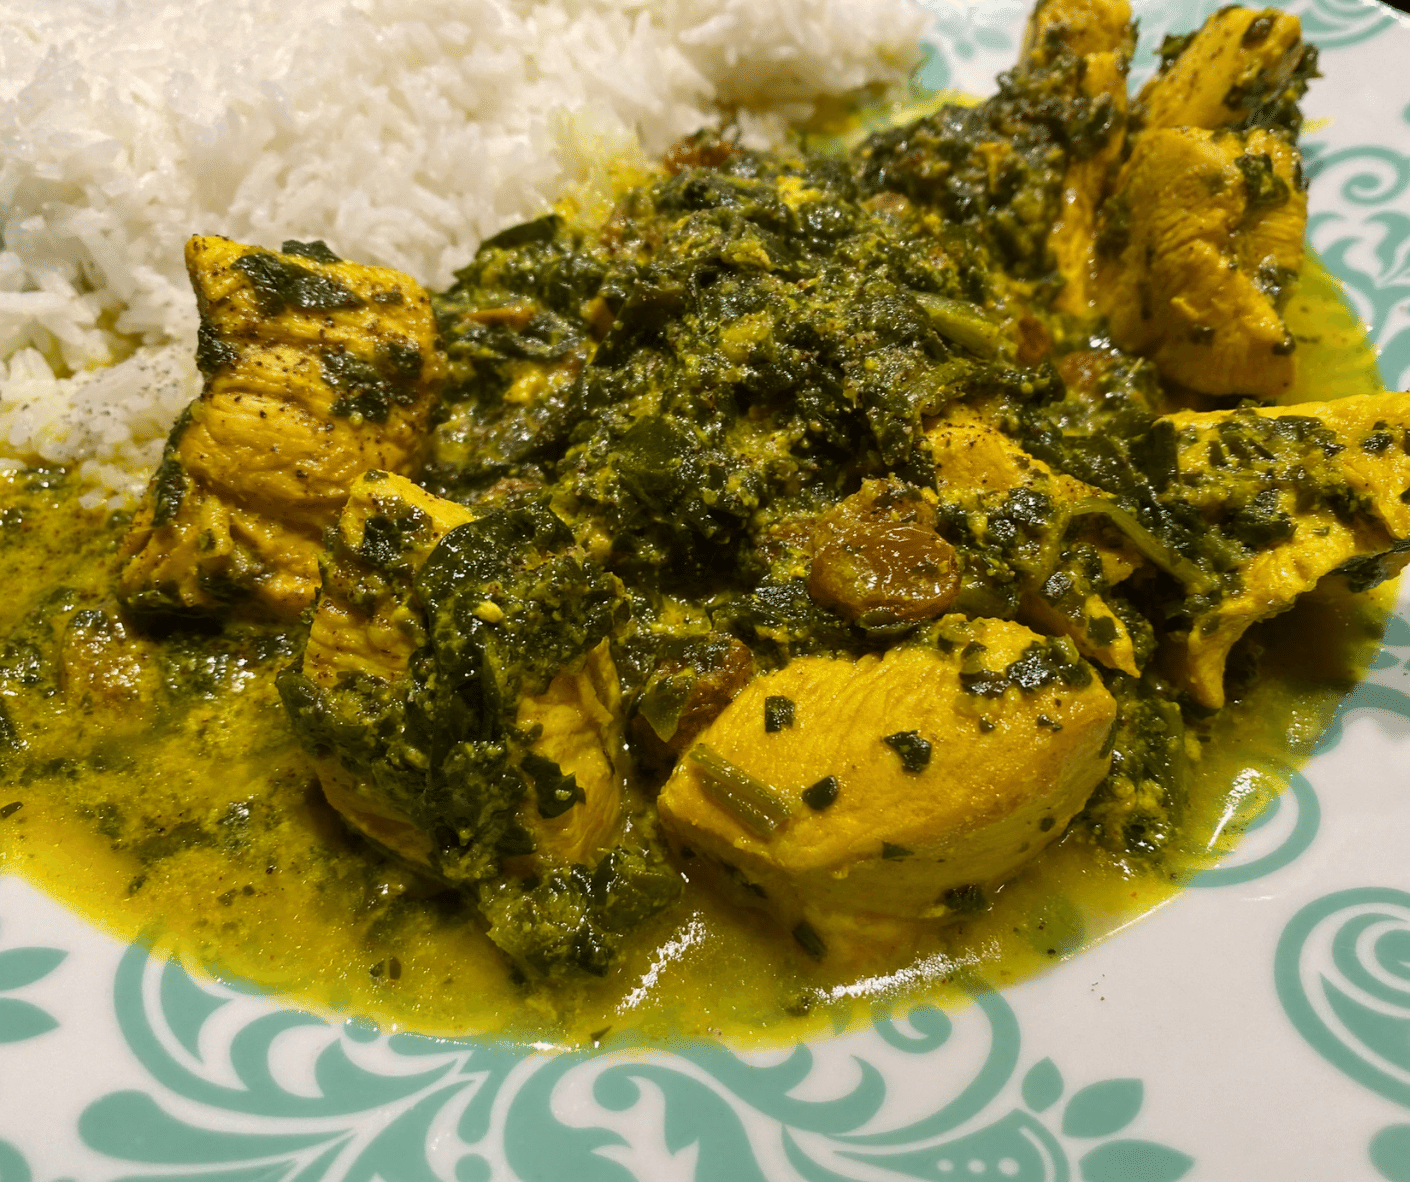 Leuchtend gelb-grünes Hähnchen Curry mit Sultaninen und Spinat. Angerichtet auf einem türkisen Teller mit weißem Basmatireis.